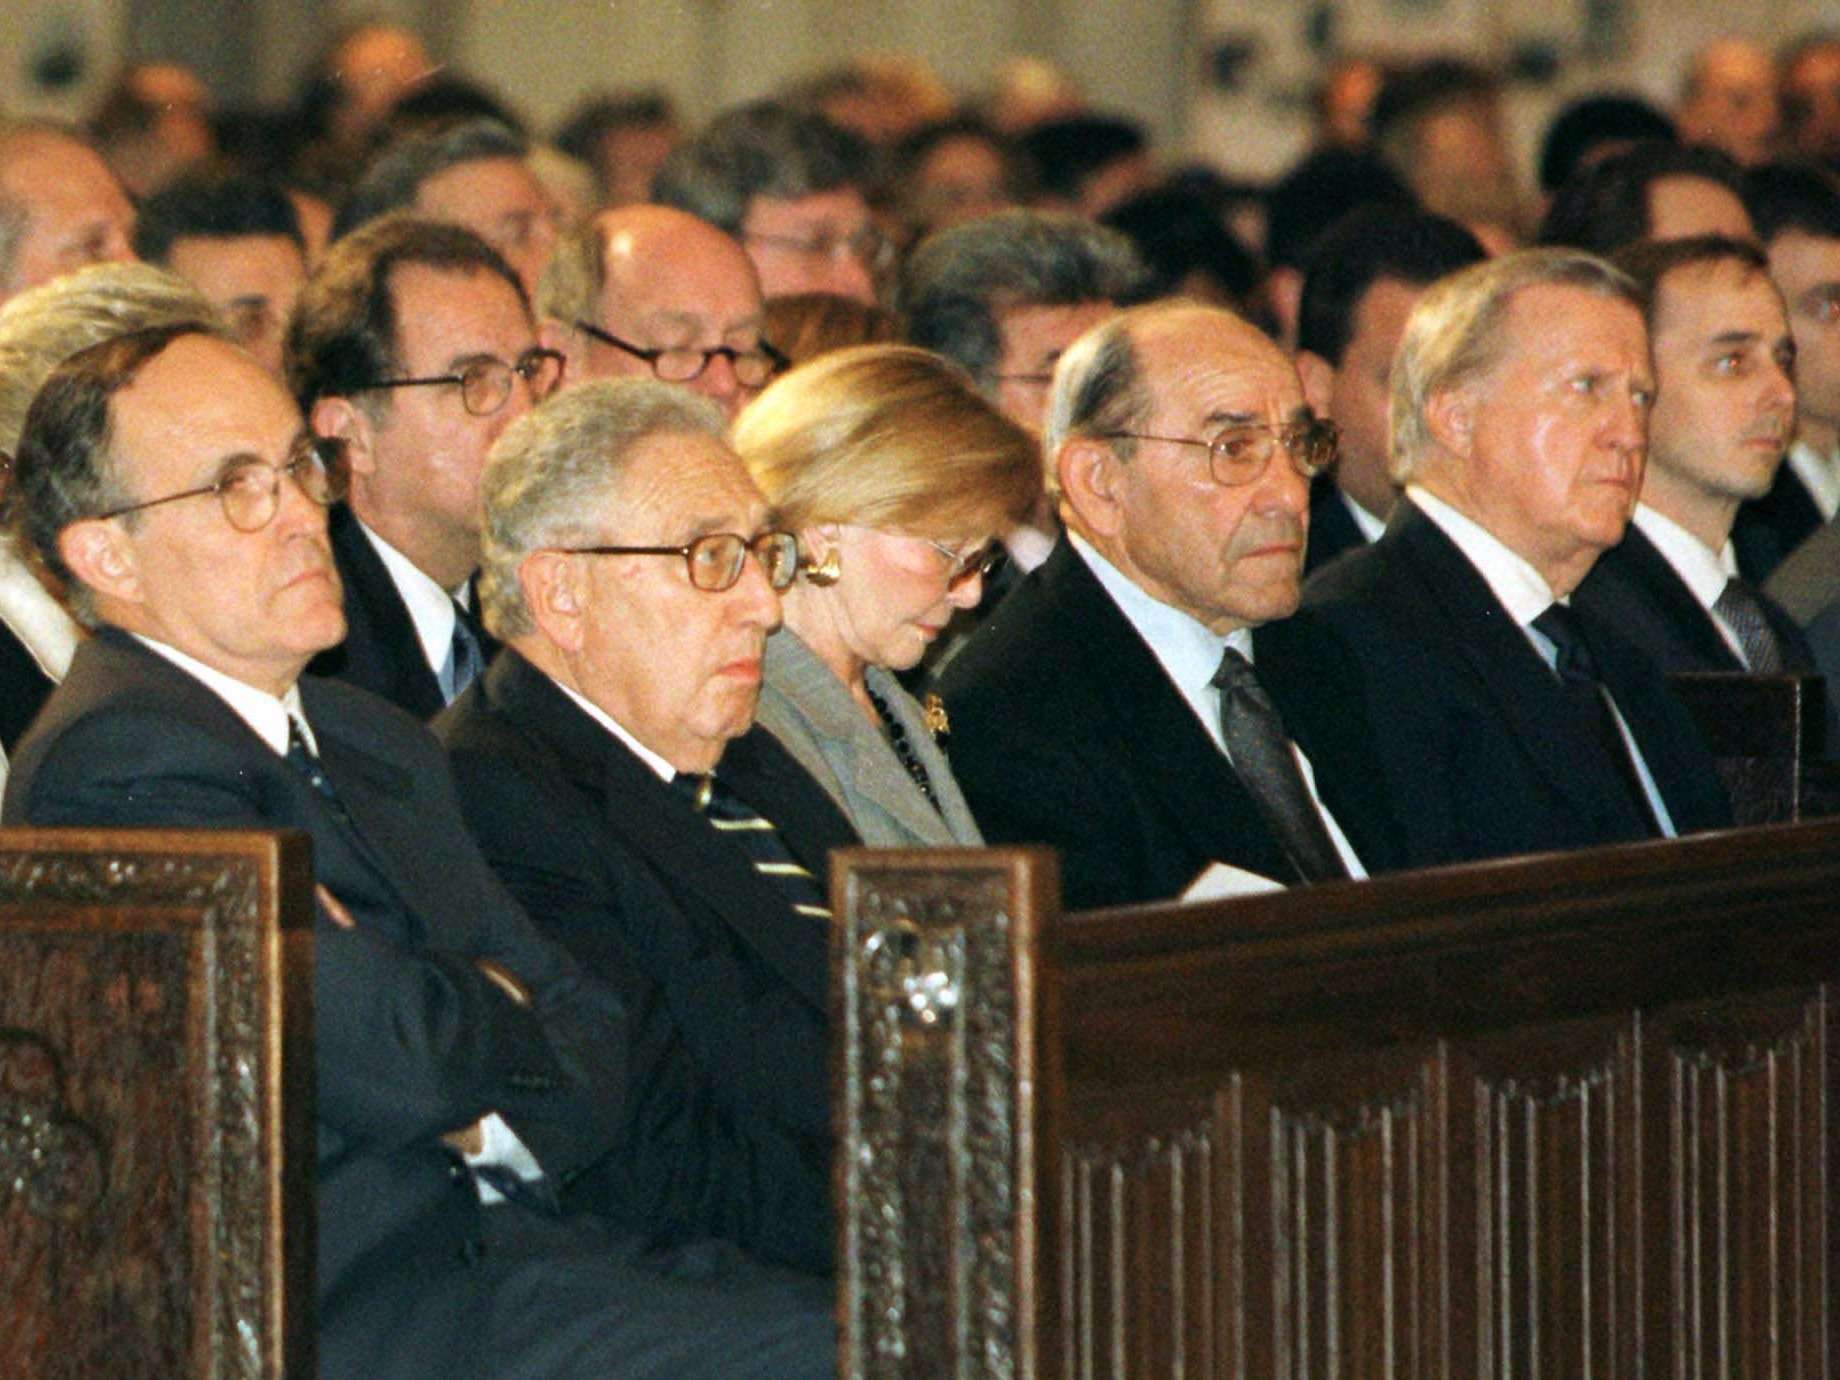 Yogi Berra - Always go to other people's funerals